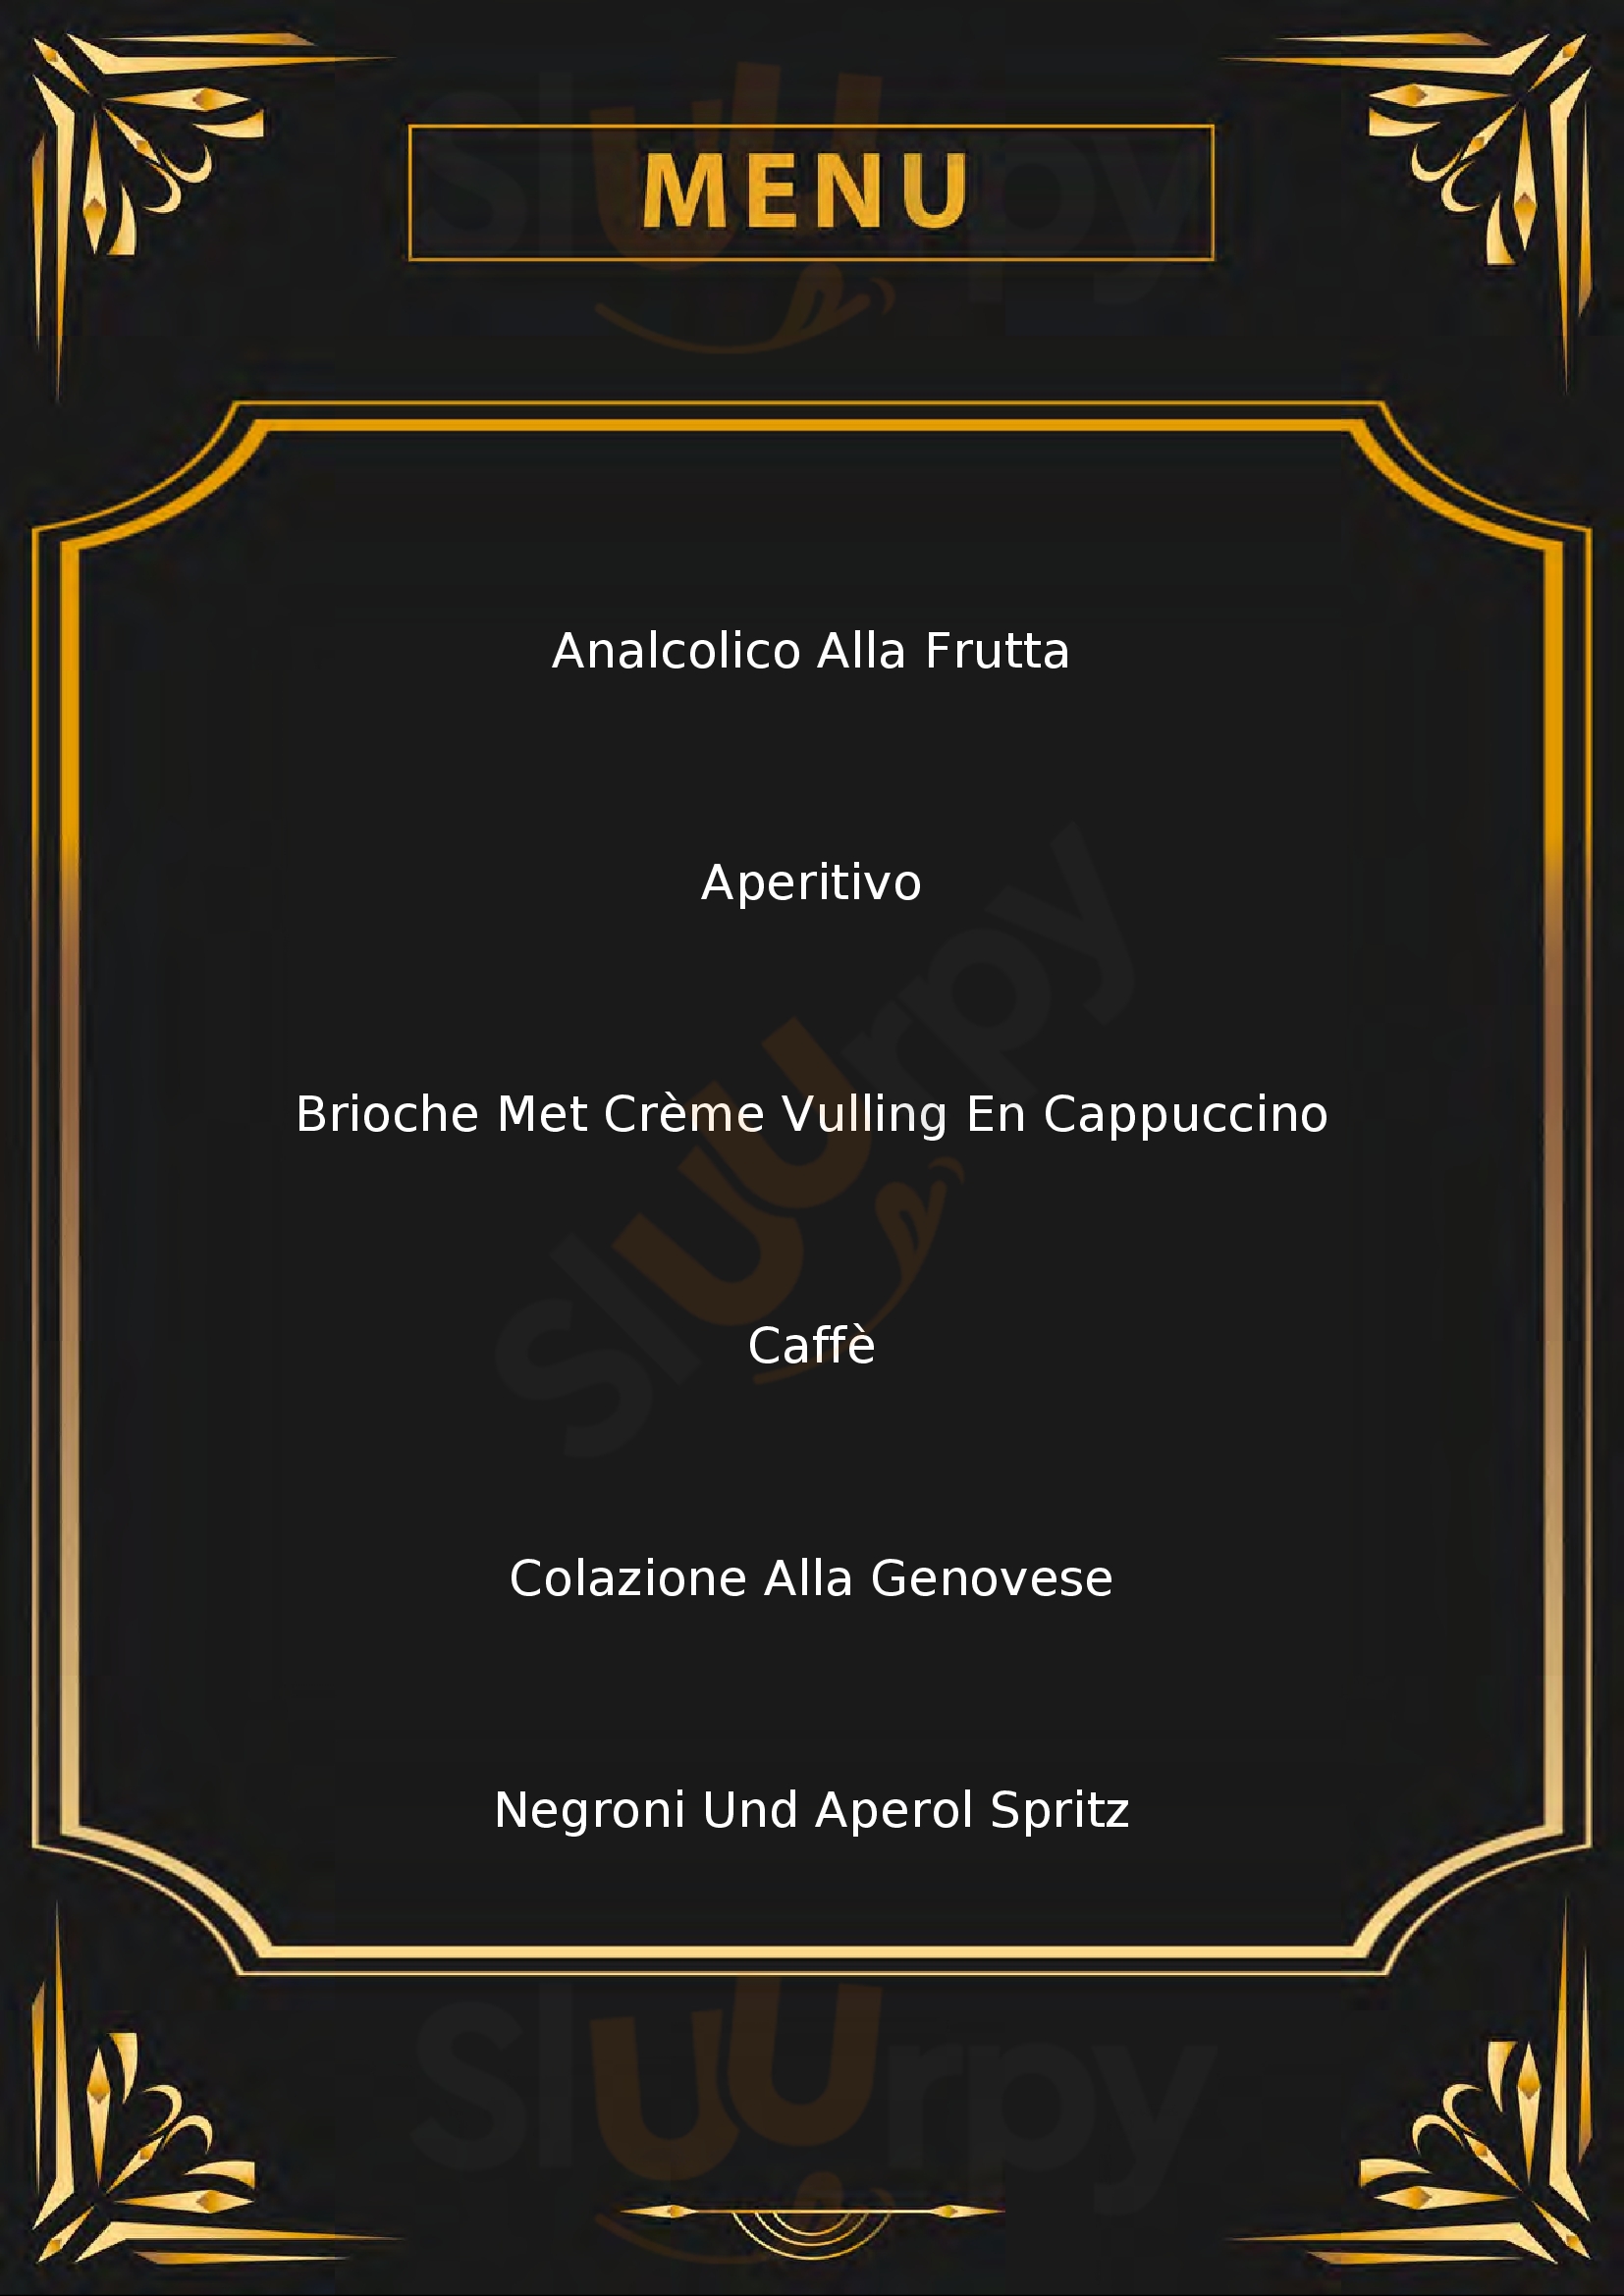 Riviera Caffè Imperia menù 1 pagina